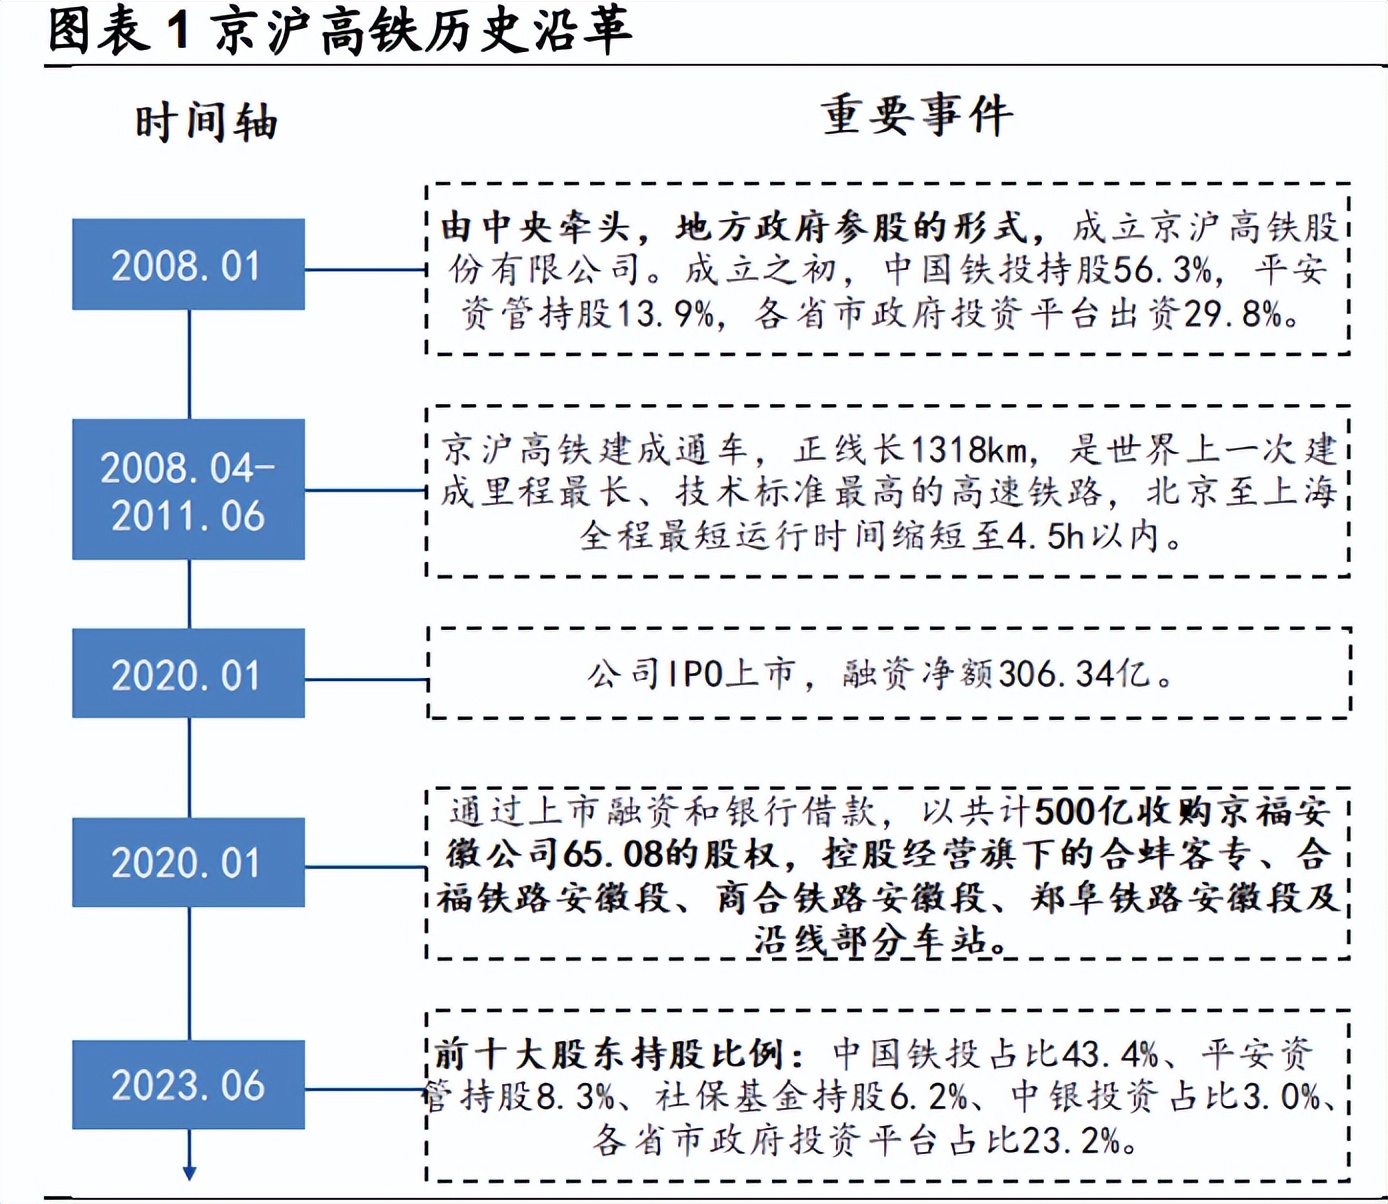 京沪高铁分析报告黄金区位核心资产价值与成长兼备